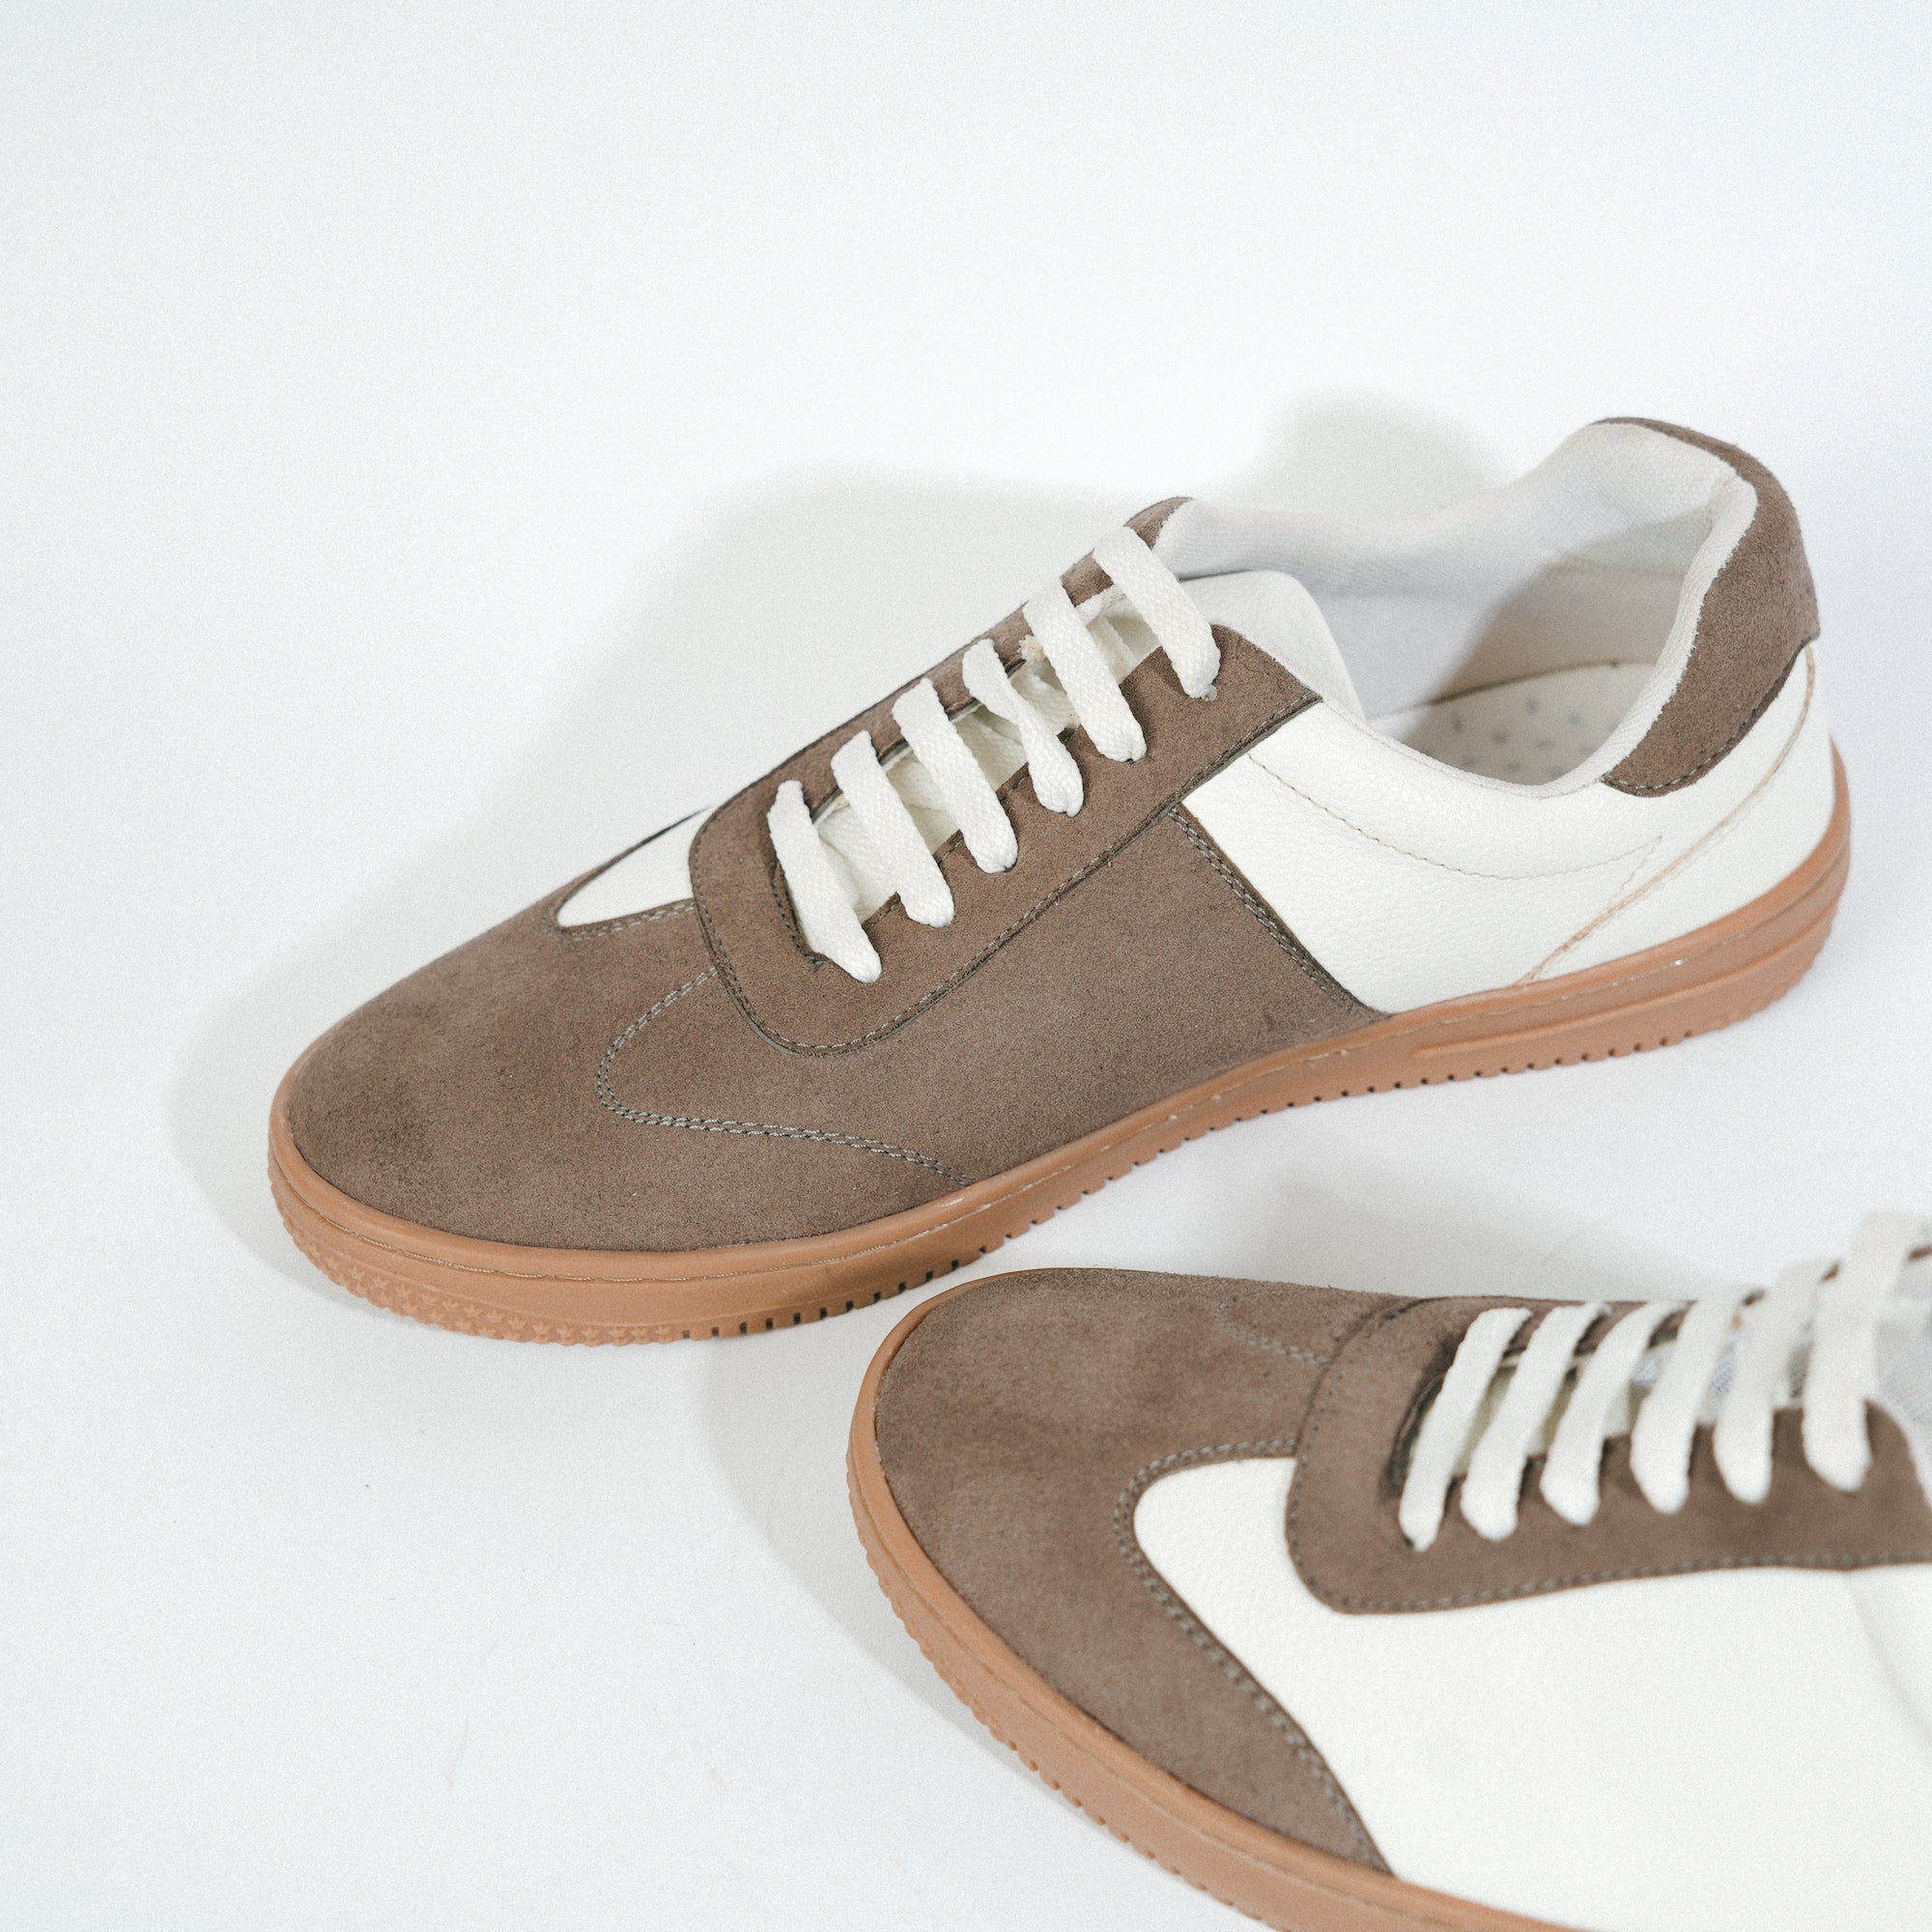 Monkstory Vintage Street Sneakers - White/Greyish Brown